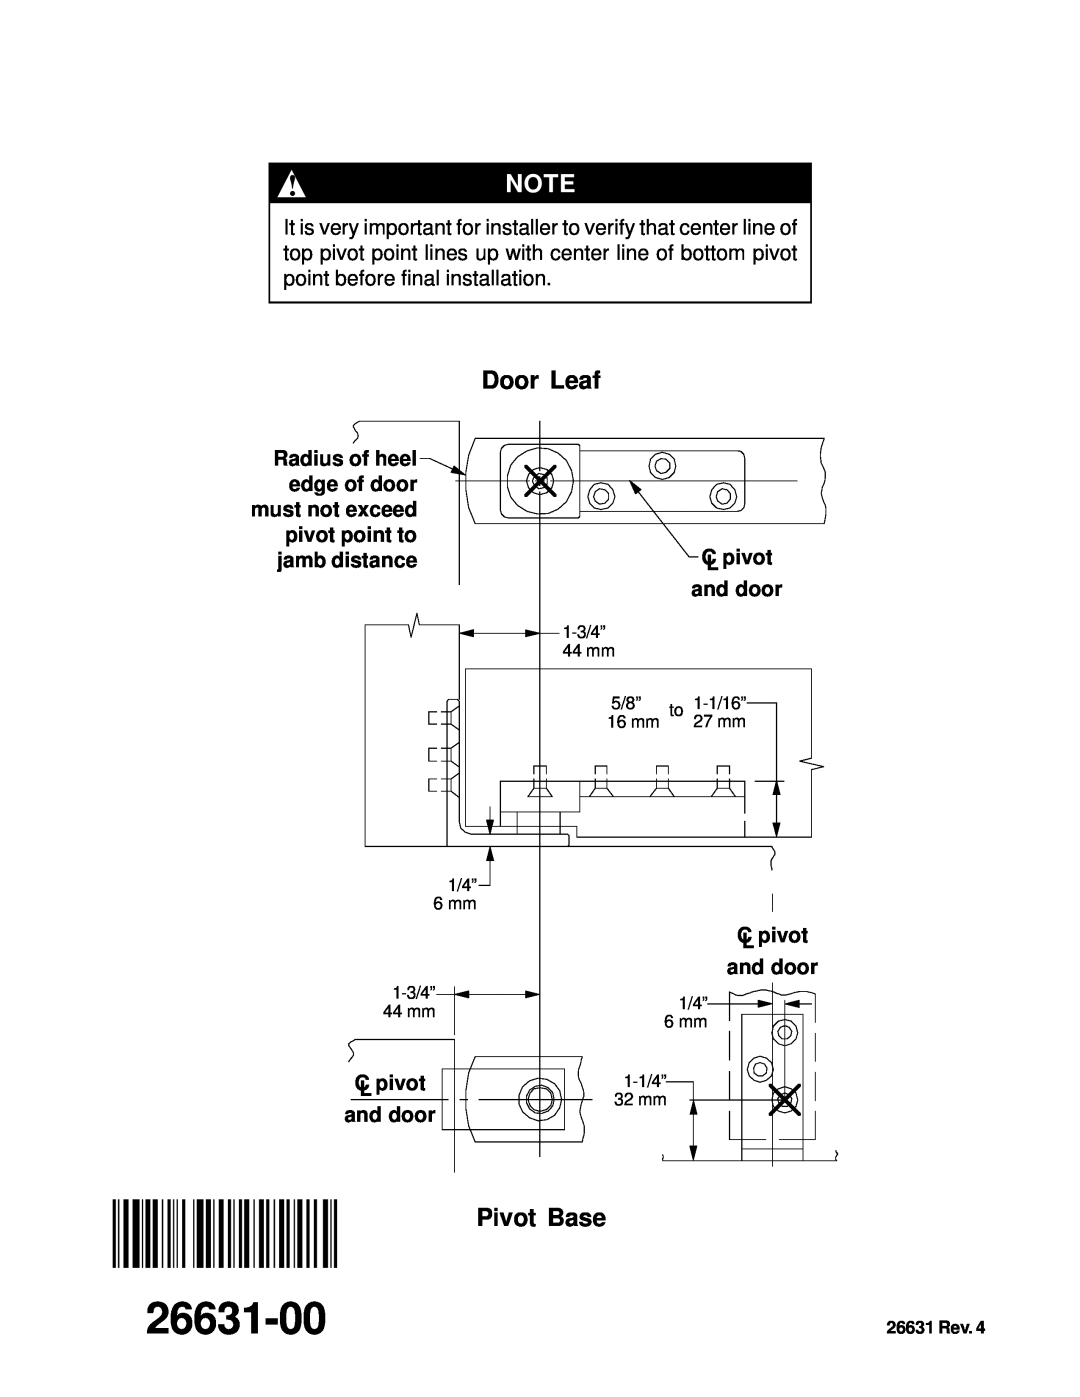 Ives 7255J installation instructions 26631-00, Door Leaf, Pivot Base, 26631 Rev 